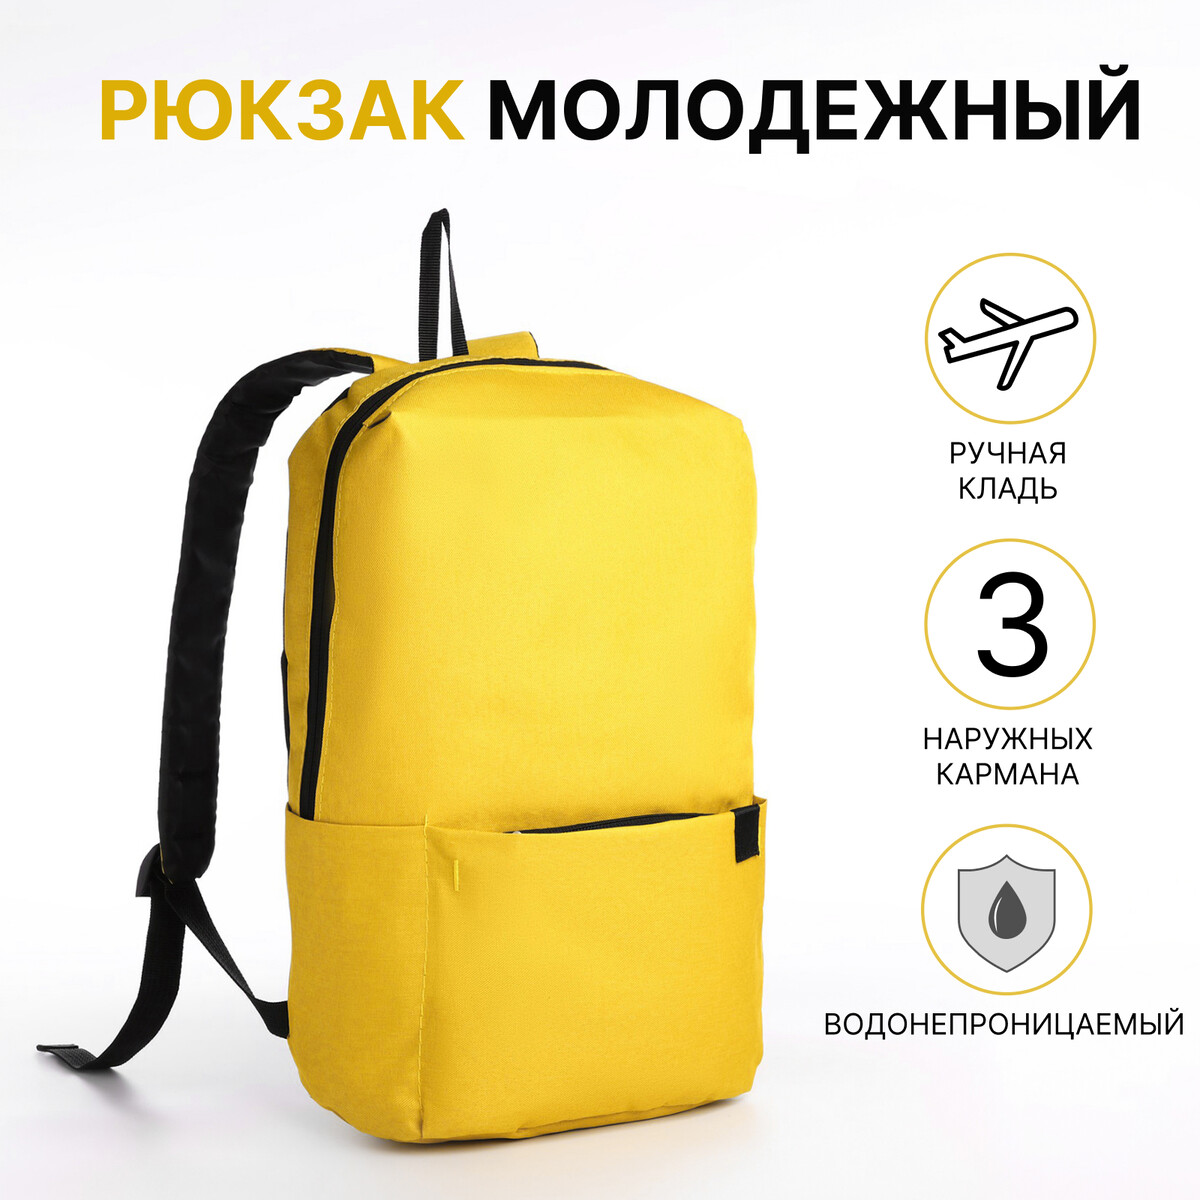 Рюкзак молодежный из текстиля на молнии, водонепроницаемый, наружный карман, цвет желтый рюкзак молодежный из текстиля на молнии водонепроницаемый наружный карман желтый